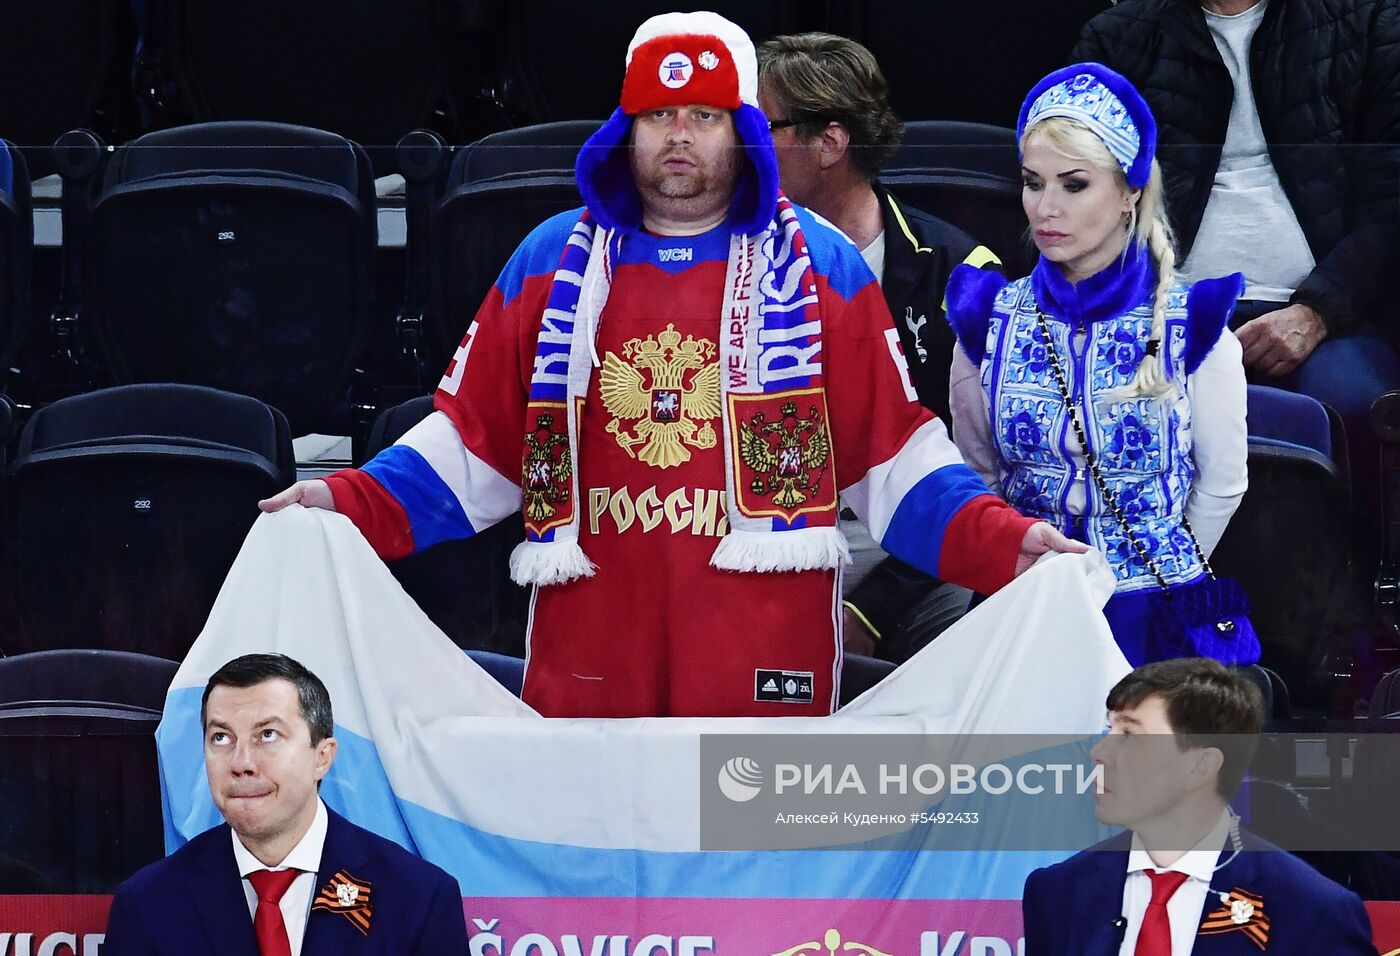 Хоккей. Чемпионат мира. Матч Белоруссия - Россия